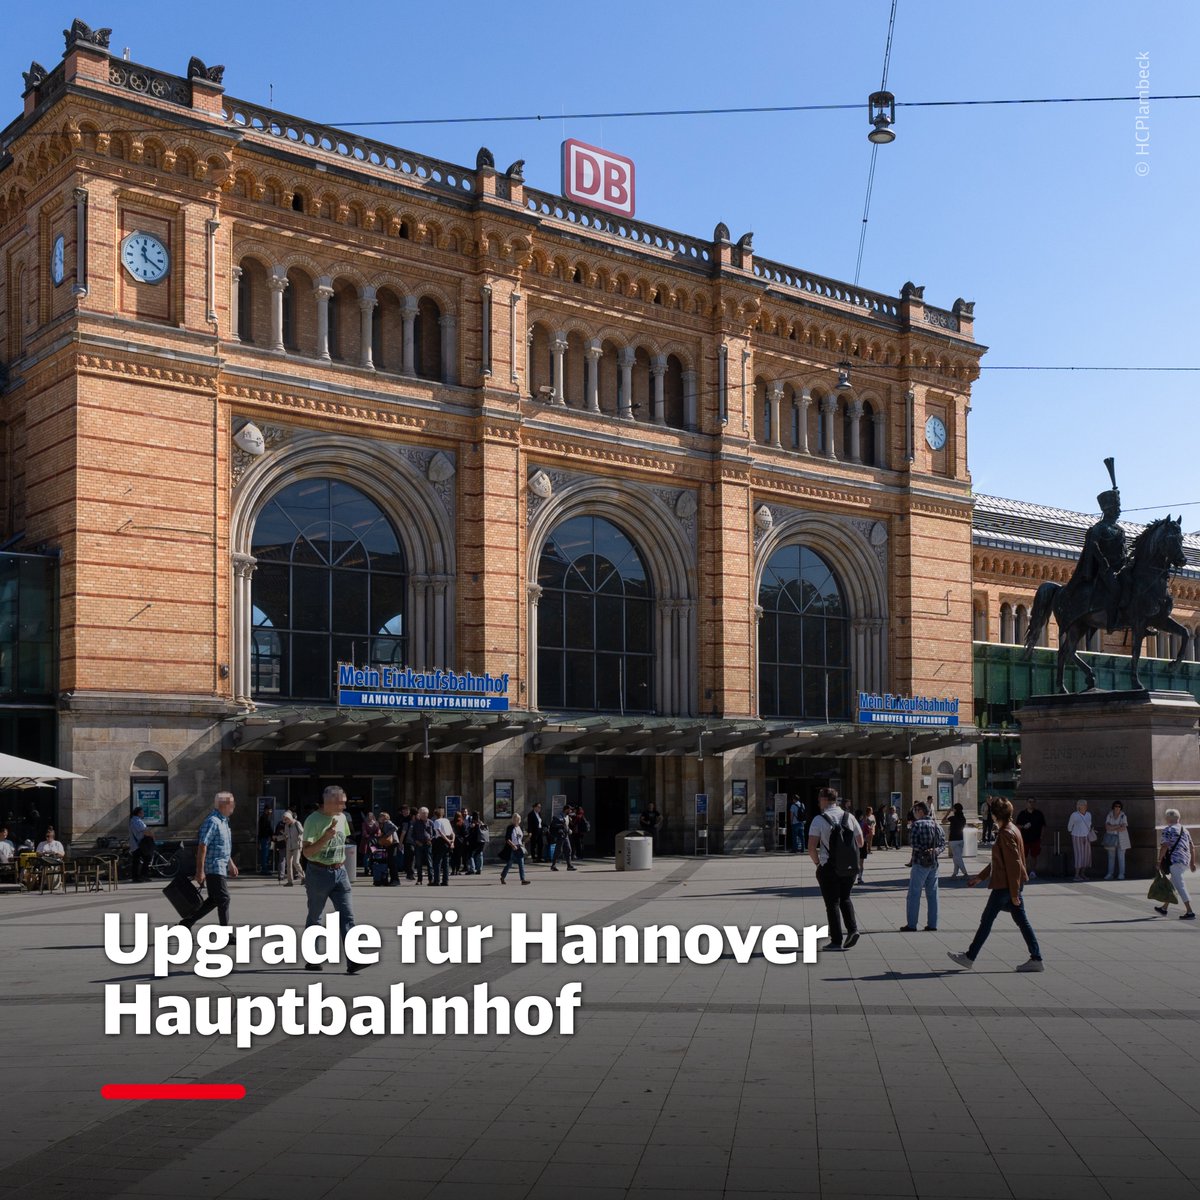 XXL-Projekt für den #Deutschlandtakt: Wir bauen den Hauptbahnhof #Hannover umfassend aus. Das heißt für Euch: Ein zusätzlicher Bahnsteig, zwei neue Gleise und ein Digitales Stellwerk verbessern künftig massiv die Betriebsqualität und Pünktlichkeit. Mehr: deutschebahn.com/de/presse/pres…